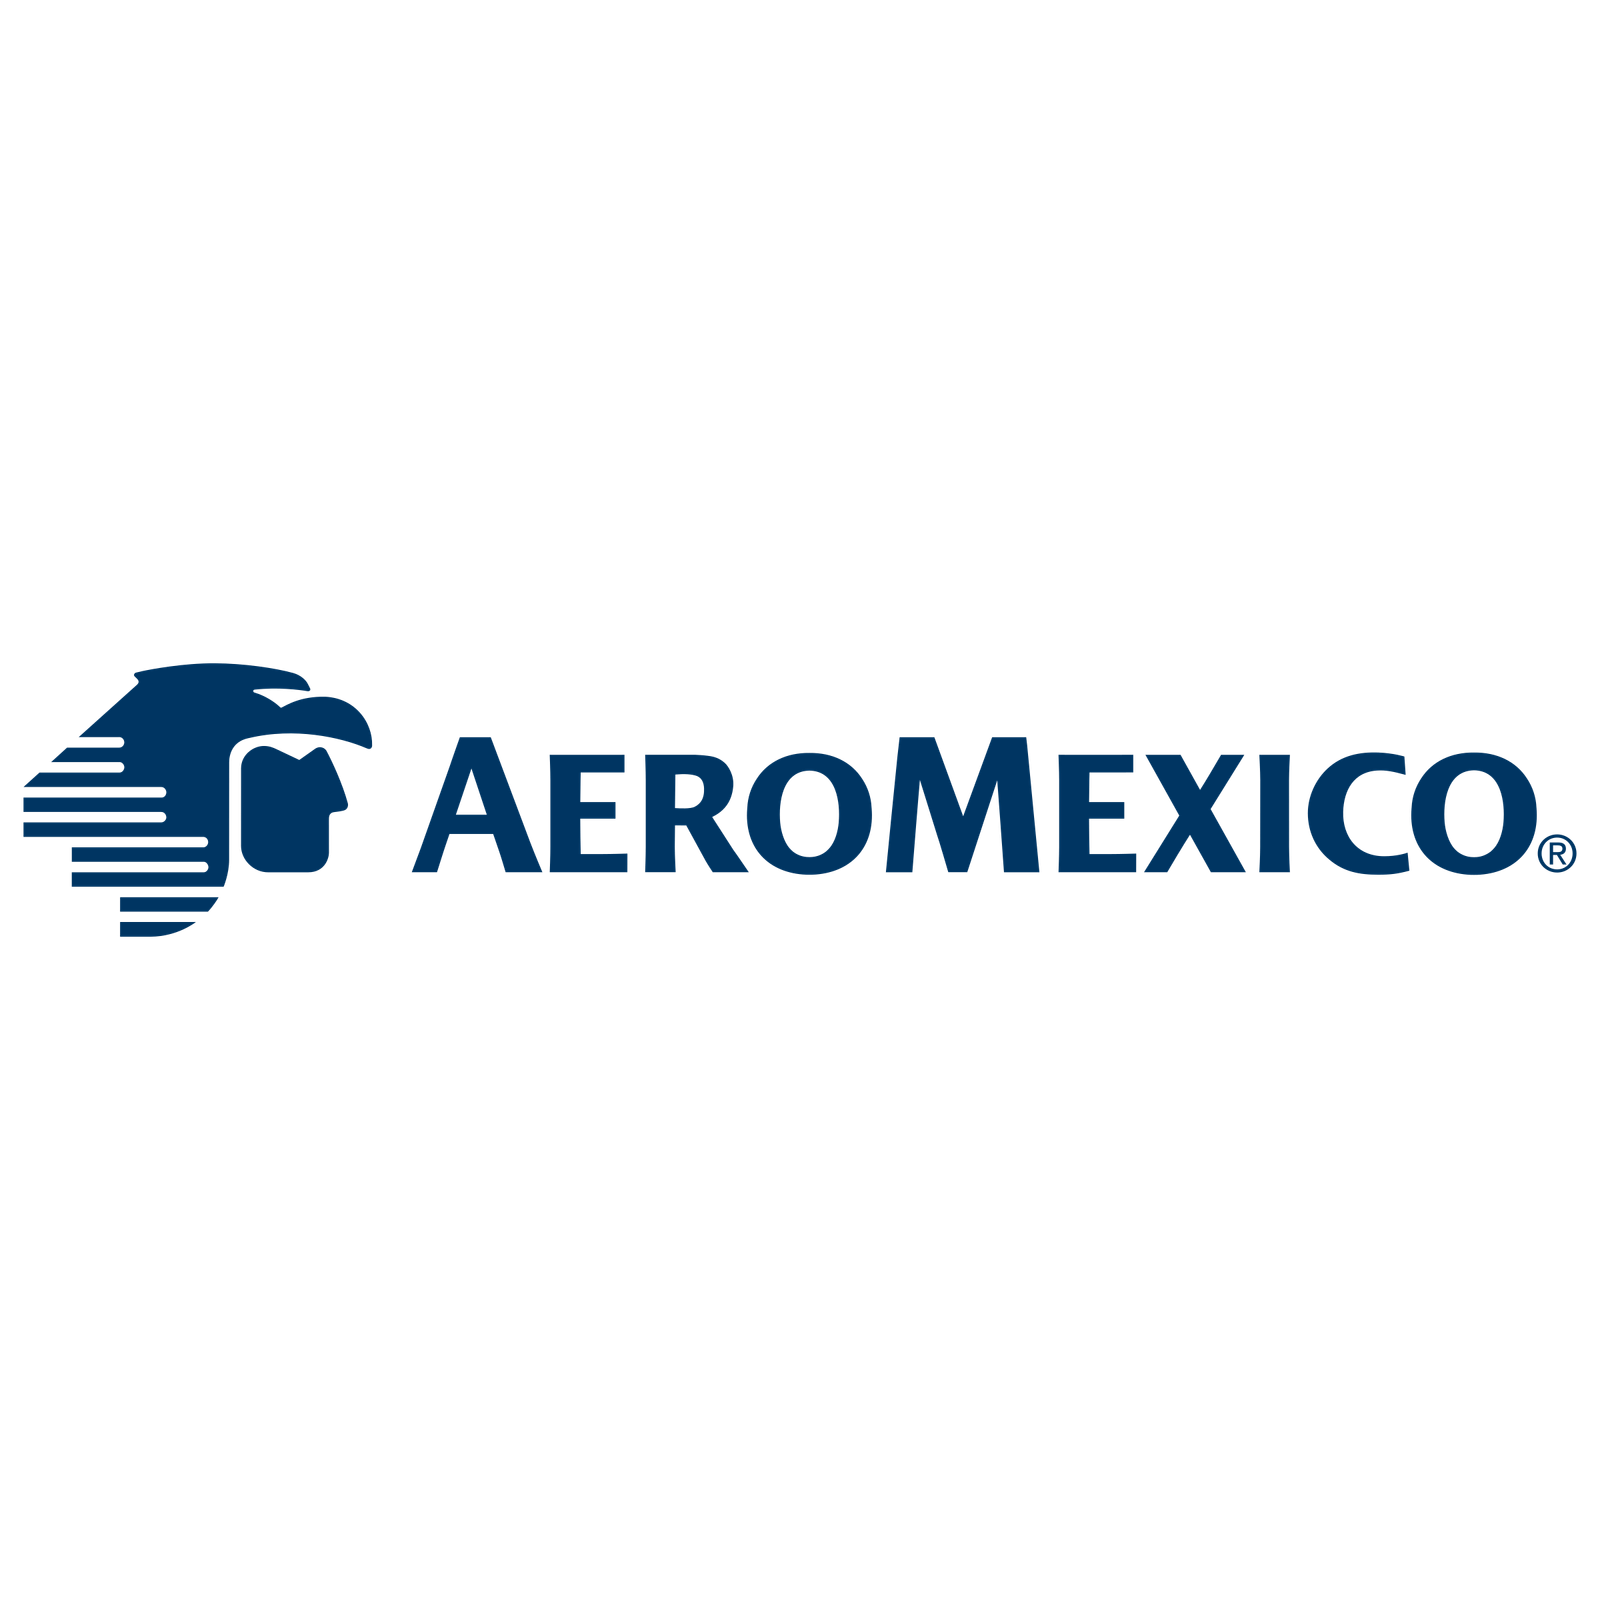 Aeromexico-min